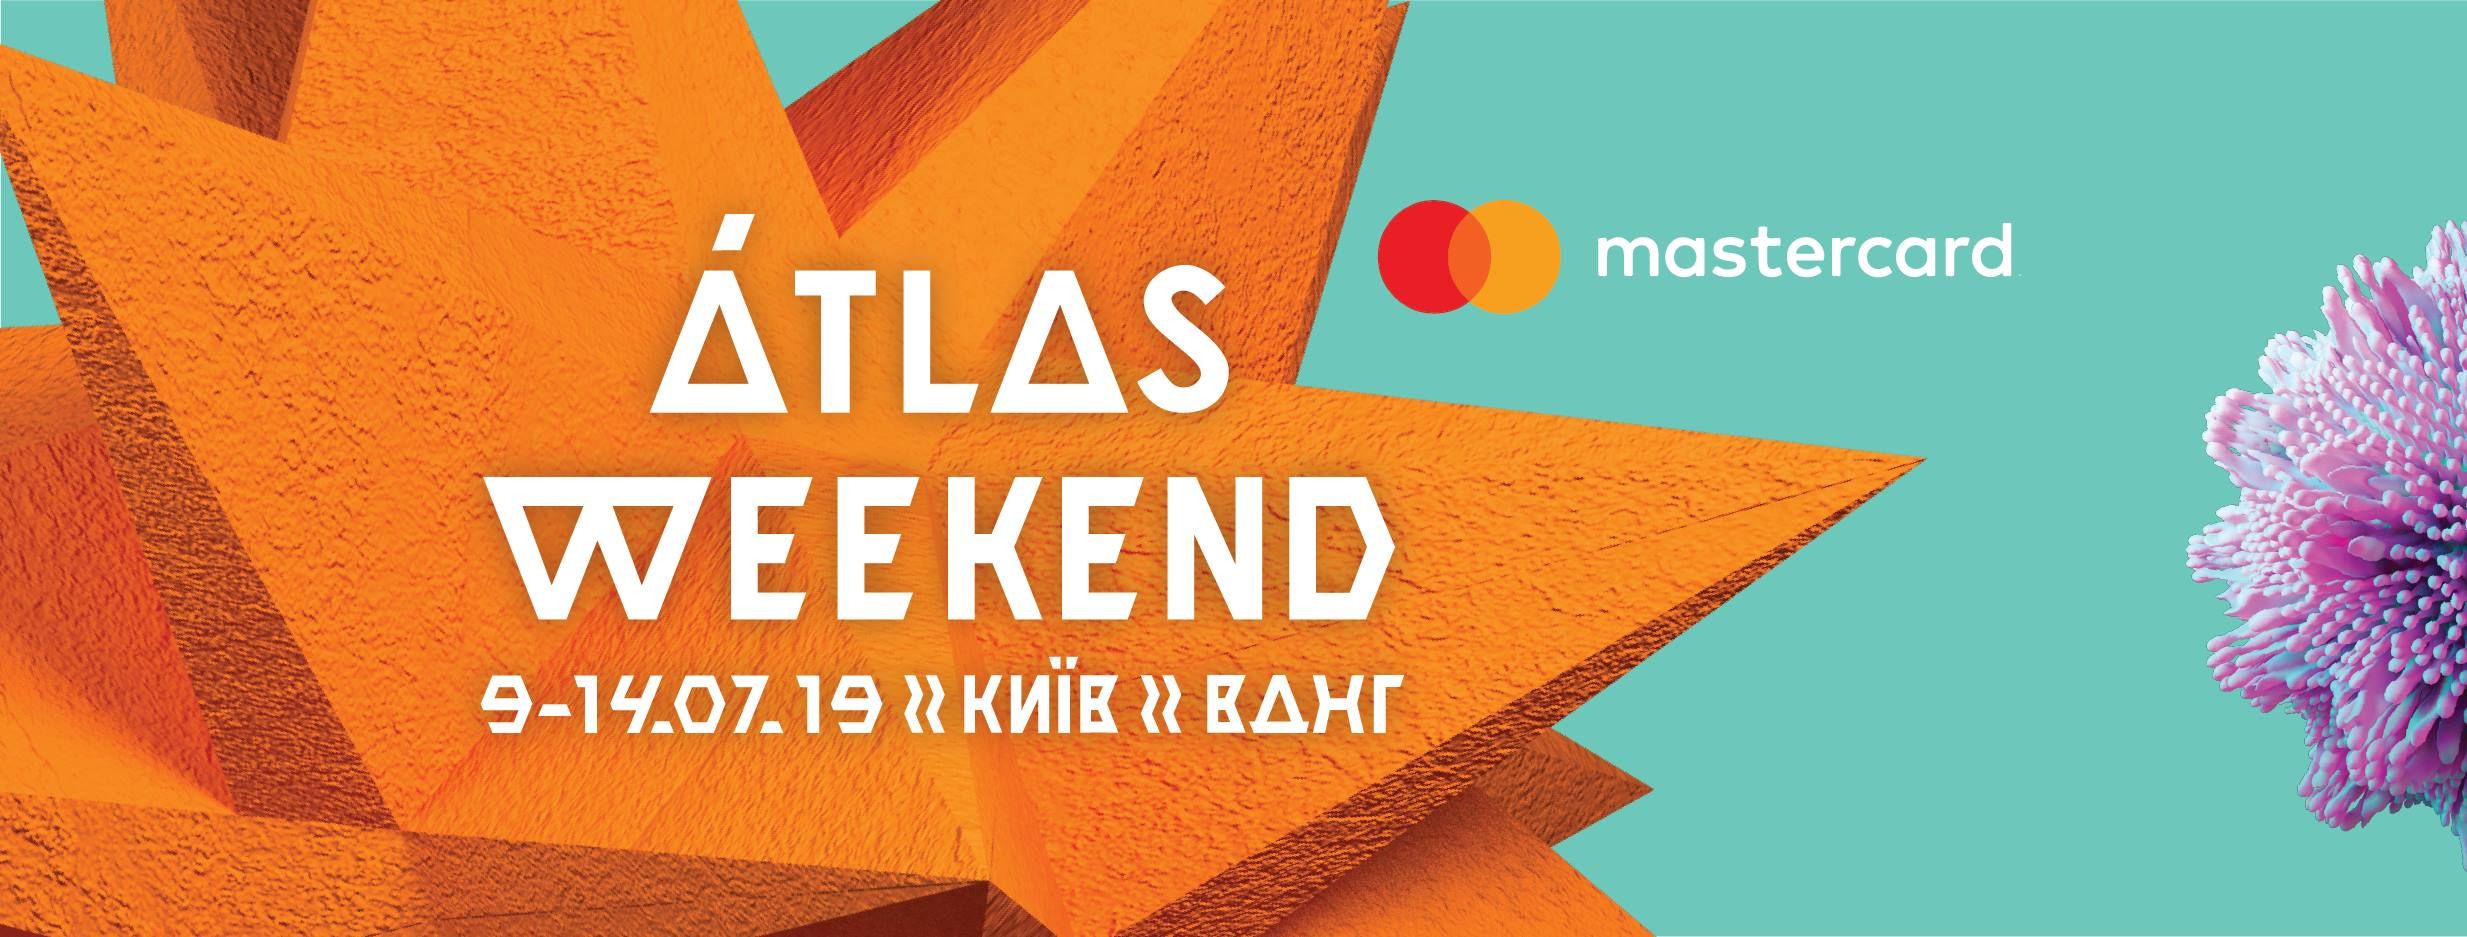 Фестиваль Atlas Weekend объявил первую четверку звездных артистов: кто они